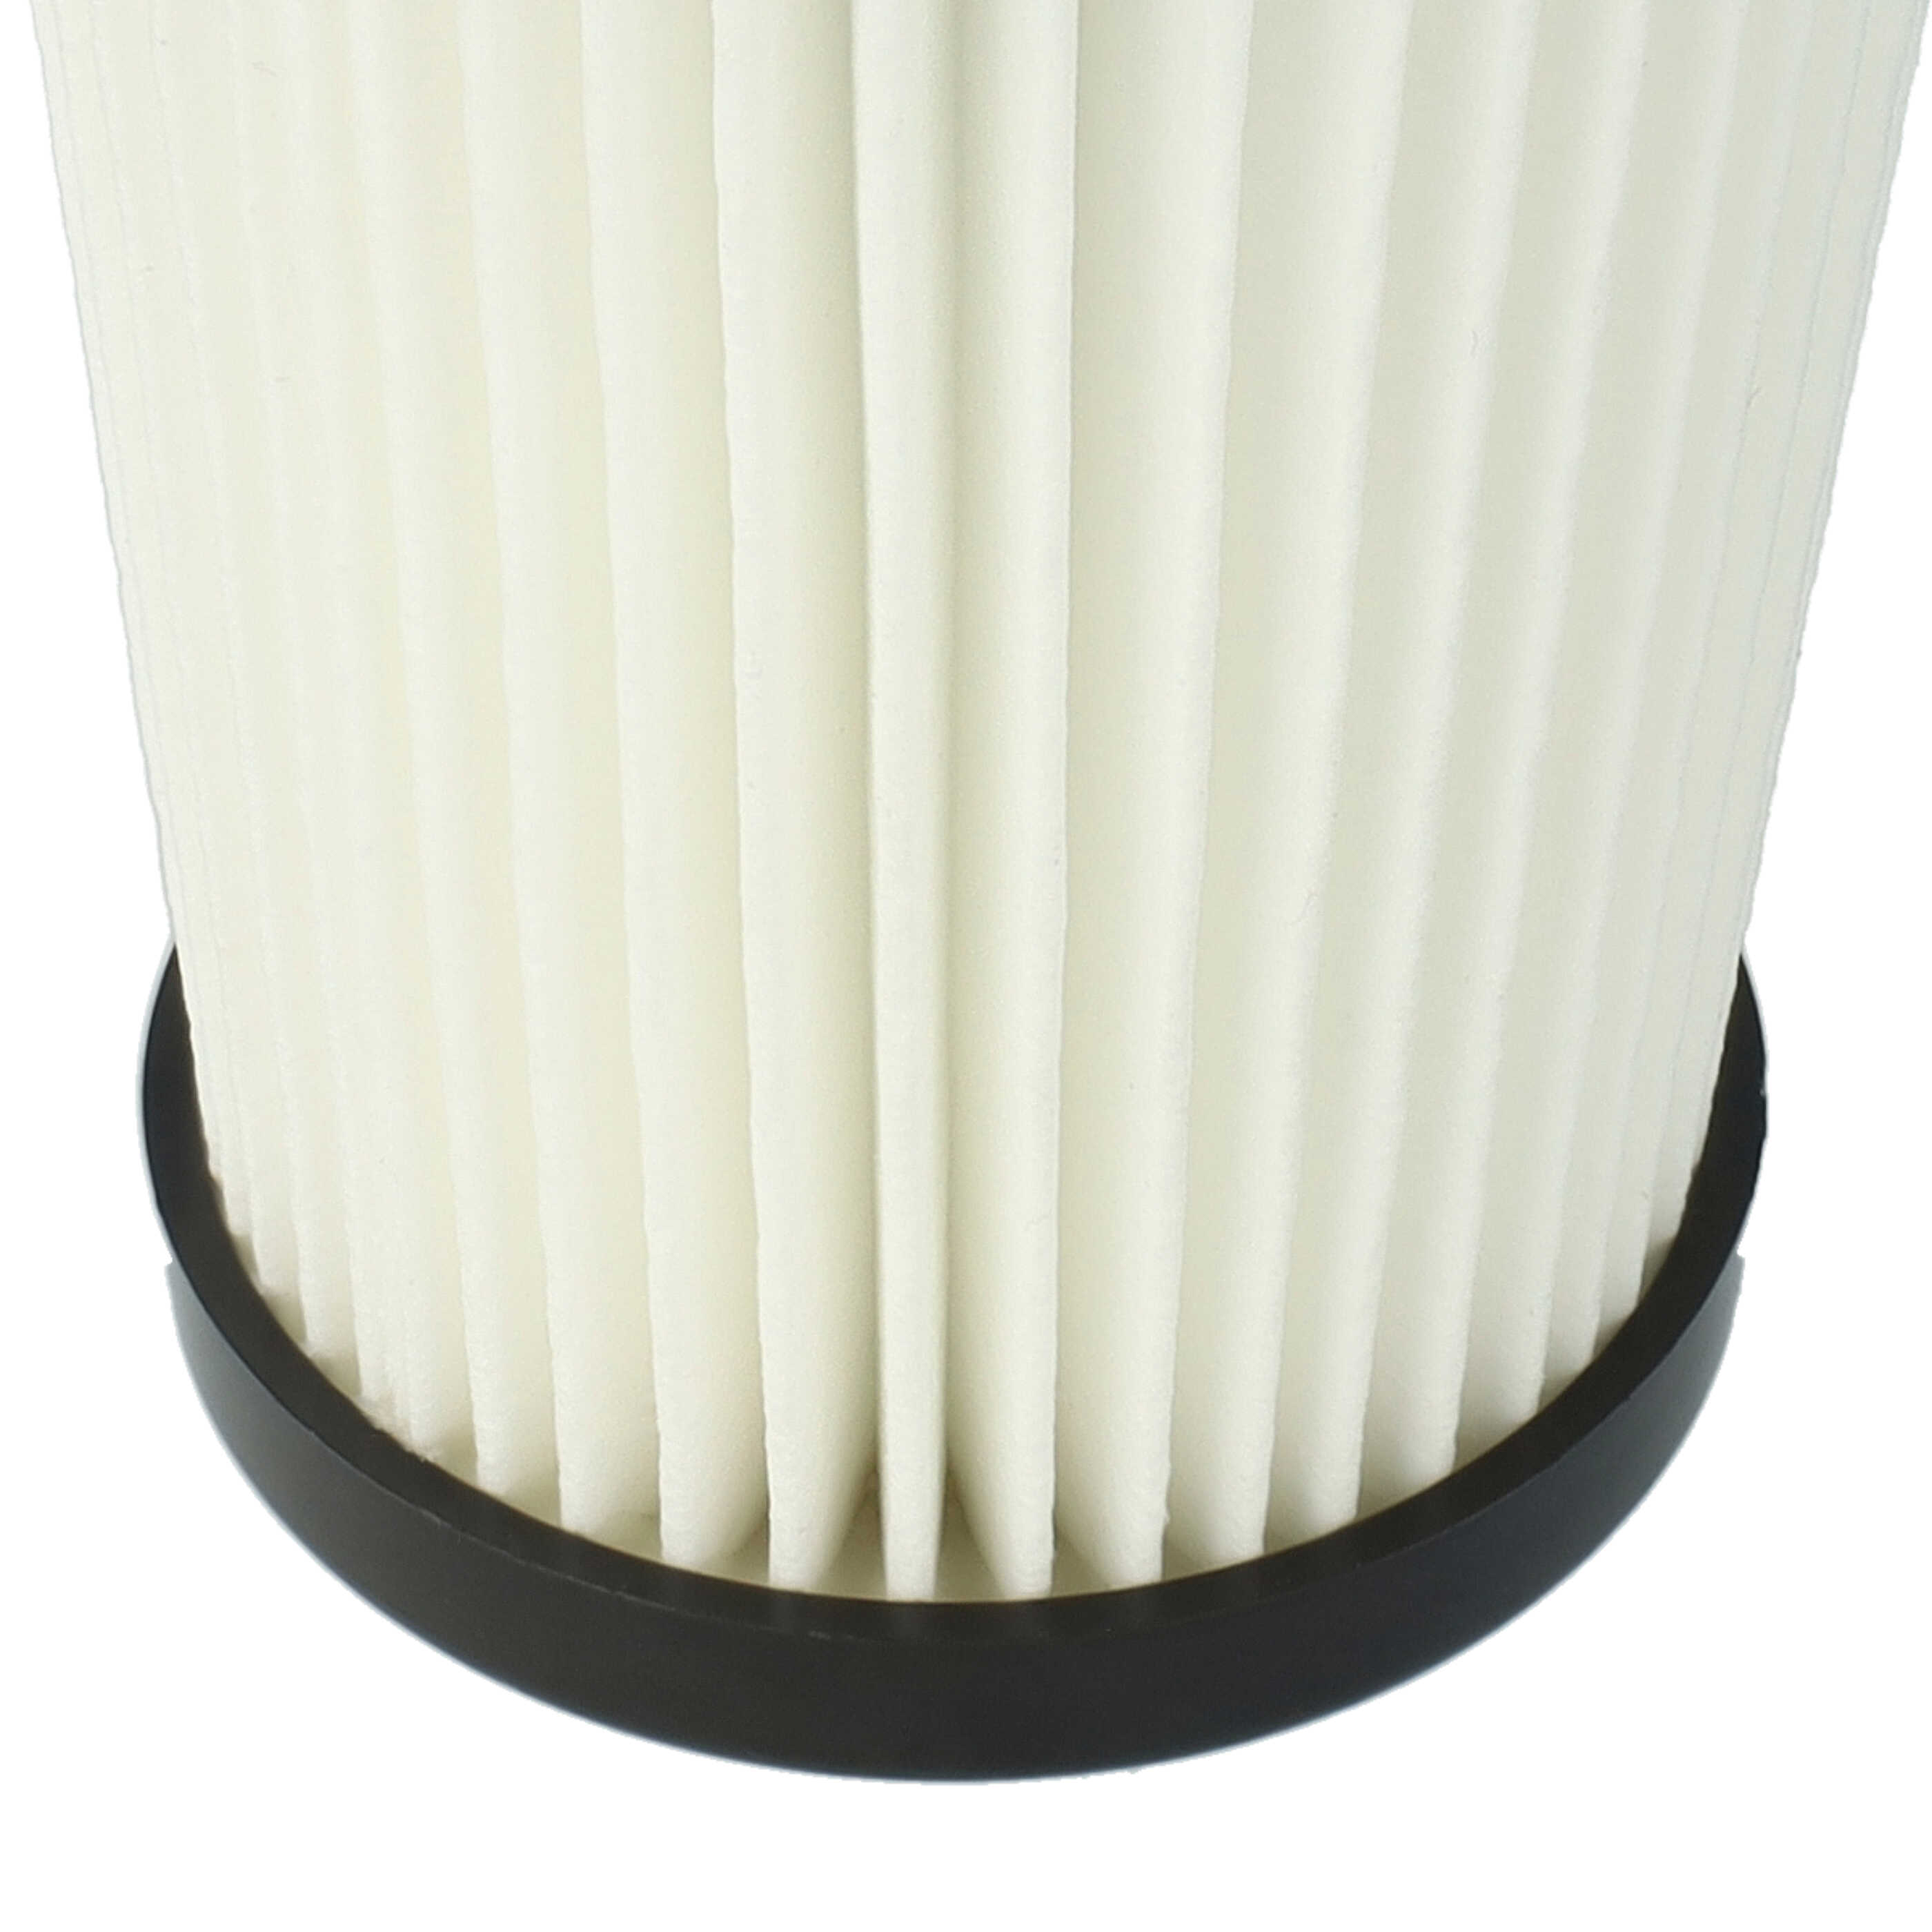 Filtro sostituisce Grundig 9178008590 per aspirapolvere - filtro a pieghe